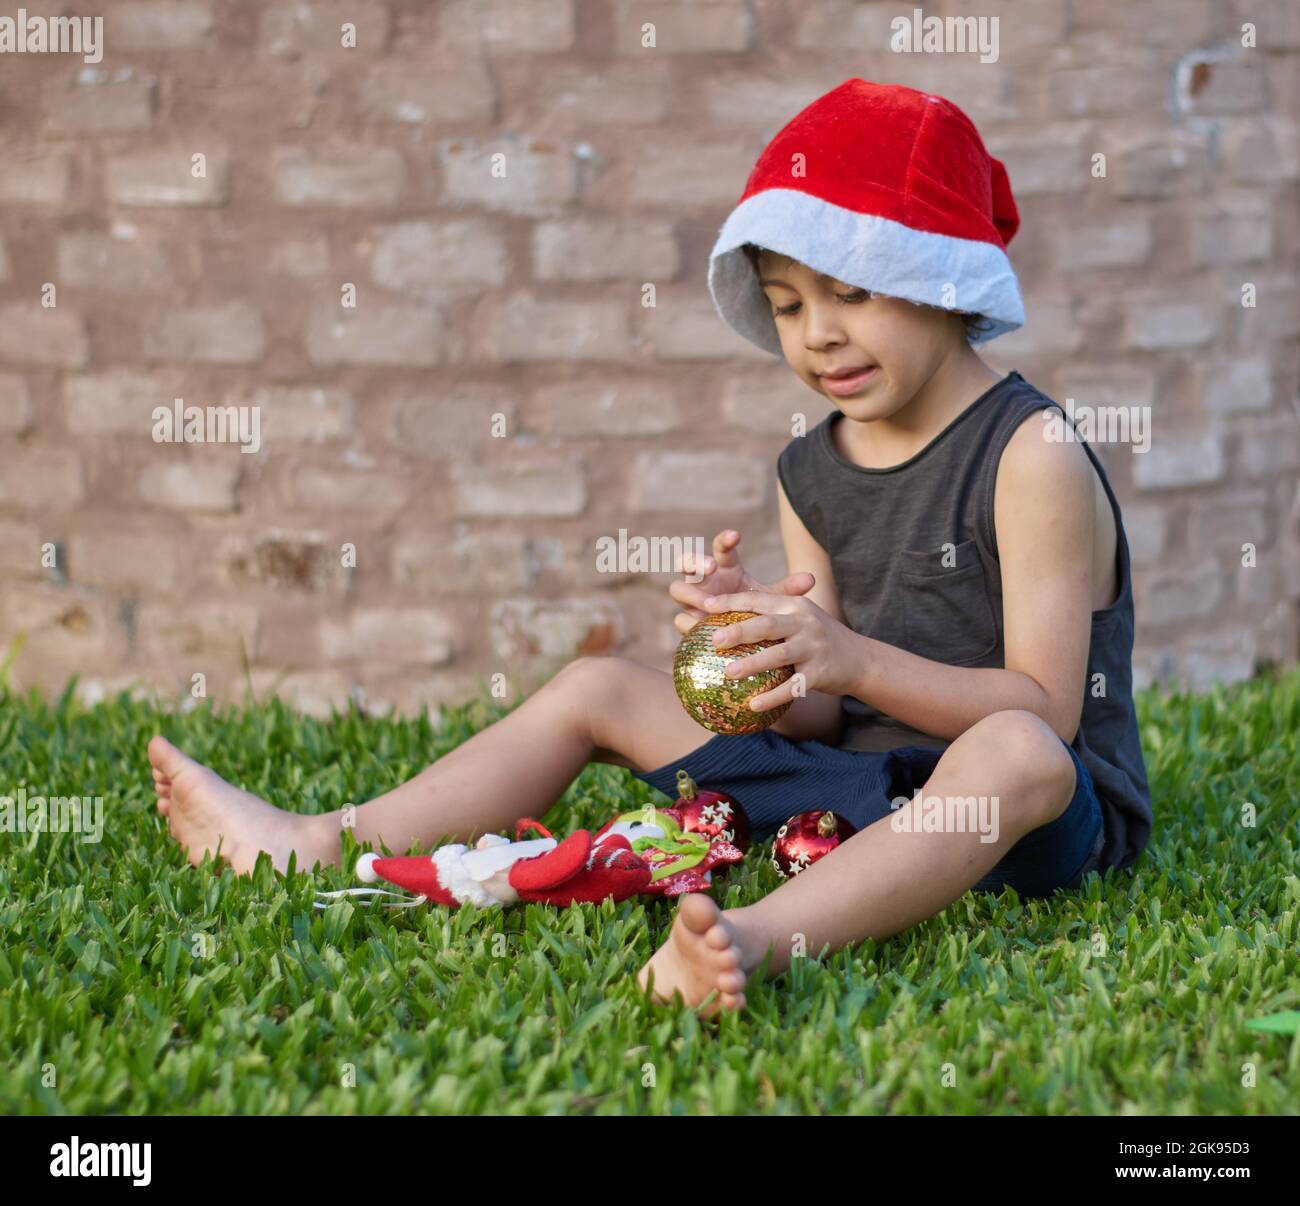 Brauner Junge, der mit weihnachtsschmuck spielt und einen weihnachtsmann-Hut trägt, der auf dem Rasen mit einer Ziegelwand im Hintergrund sitzt. Sommer. Vertikal Stockfoto